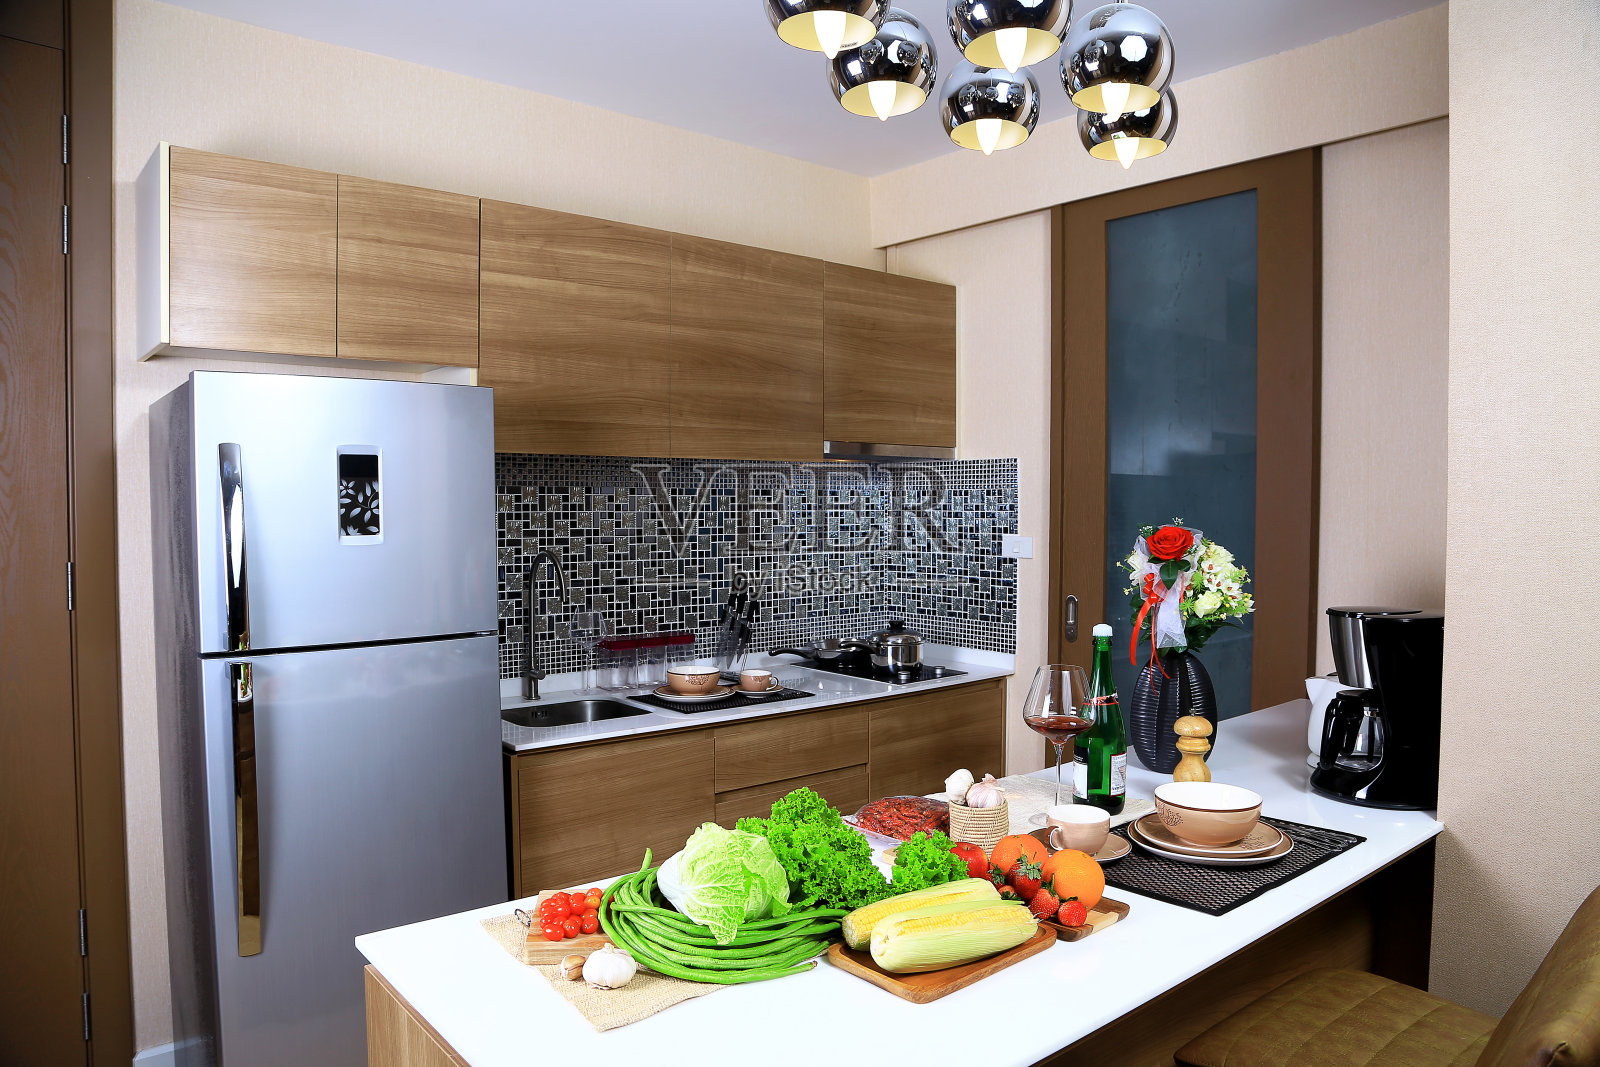 公寓厨房的豪华内饰设计，有一些蔬菜和水果。如生菜，大白菜，长豆，樱桃番茄，大蒜，酒杯，天花板上有温暖的灯光。作为厨房设计背景。照片摄影图片